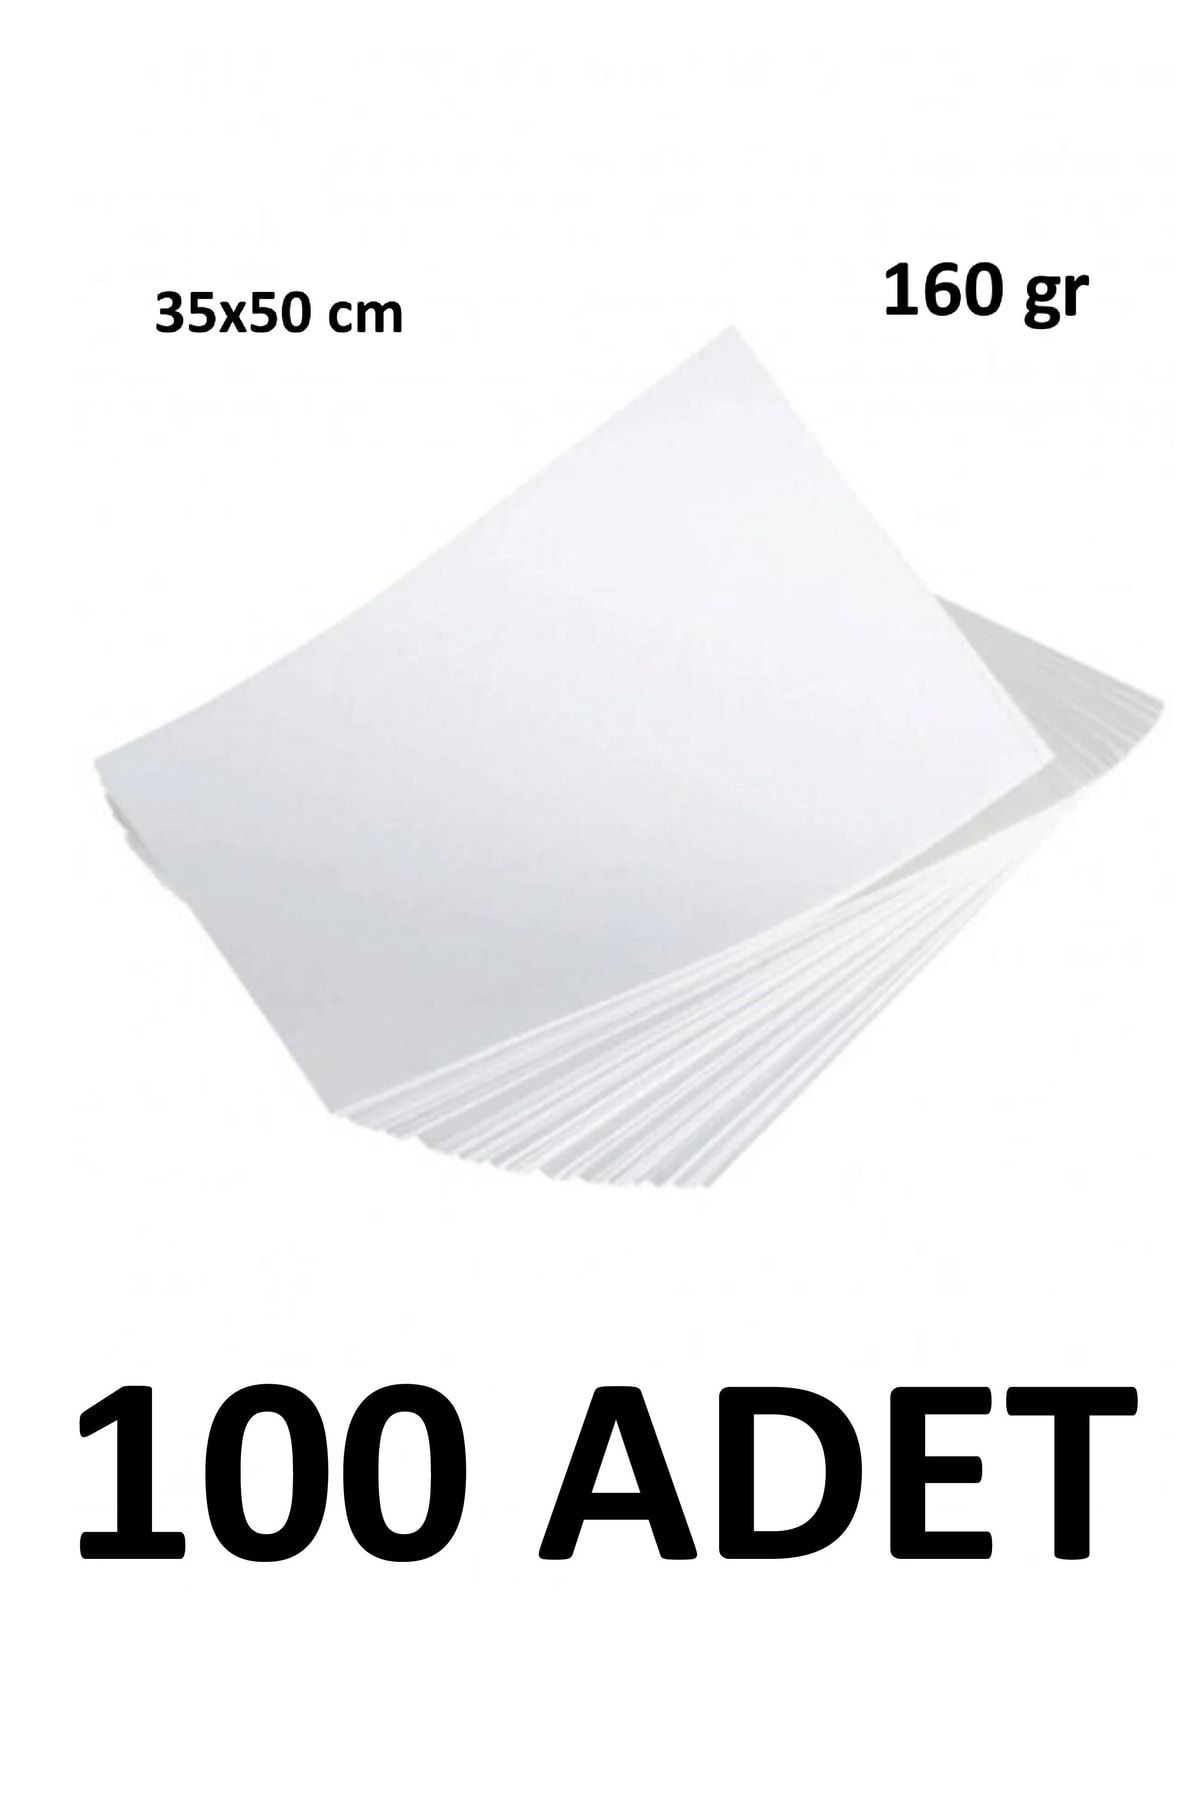 Keskin Color 100 Adet Karatis Art Dokulu Resim Kağıdı 35 X 50 Cm 160 Gr